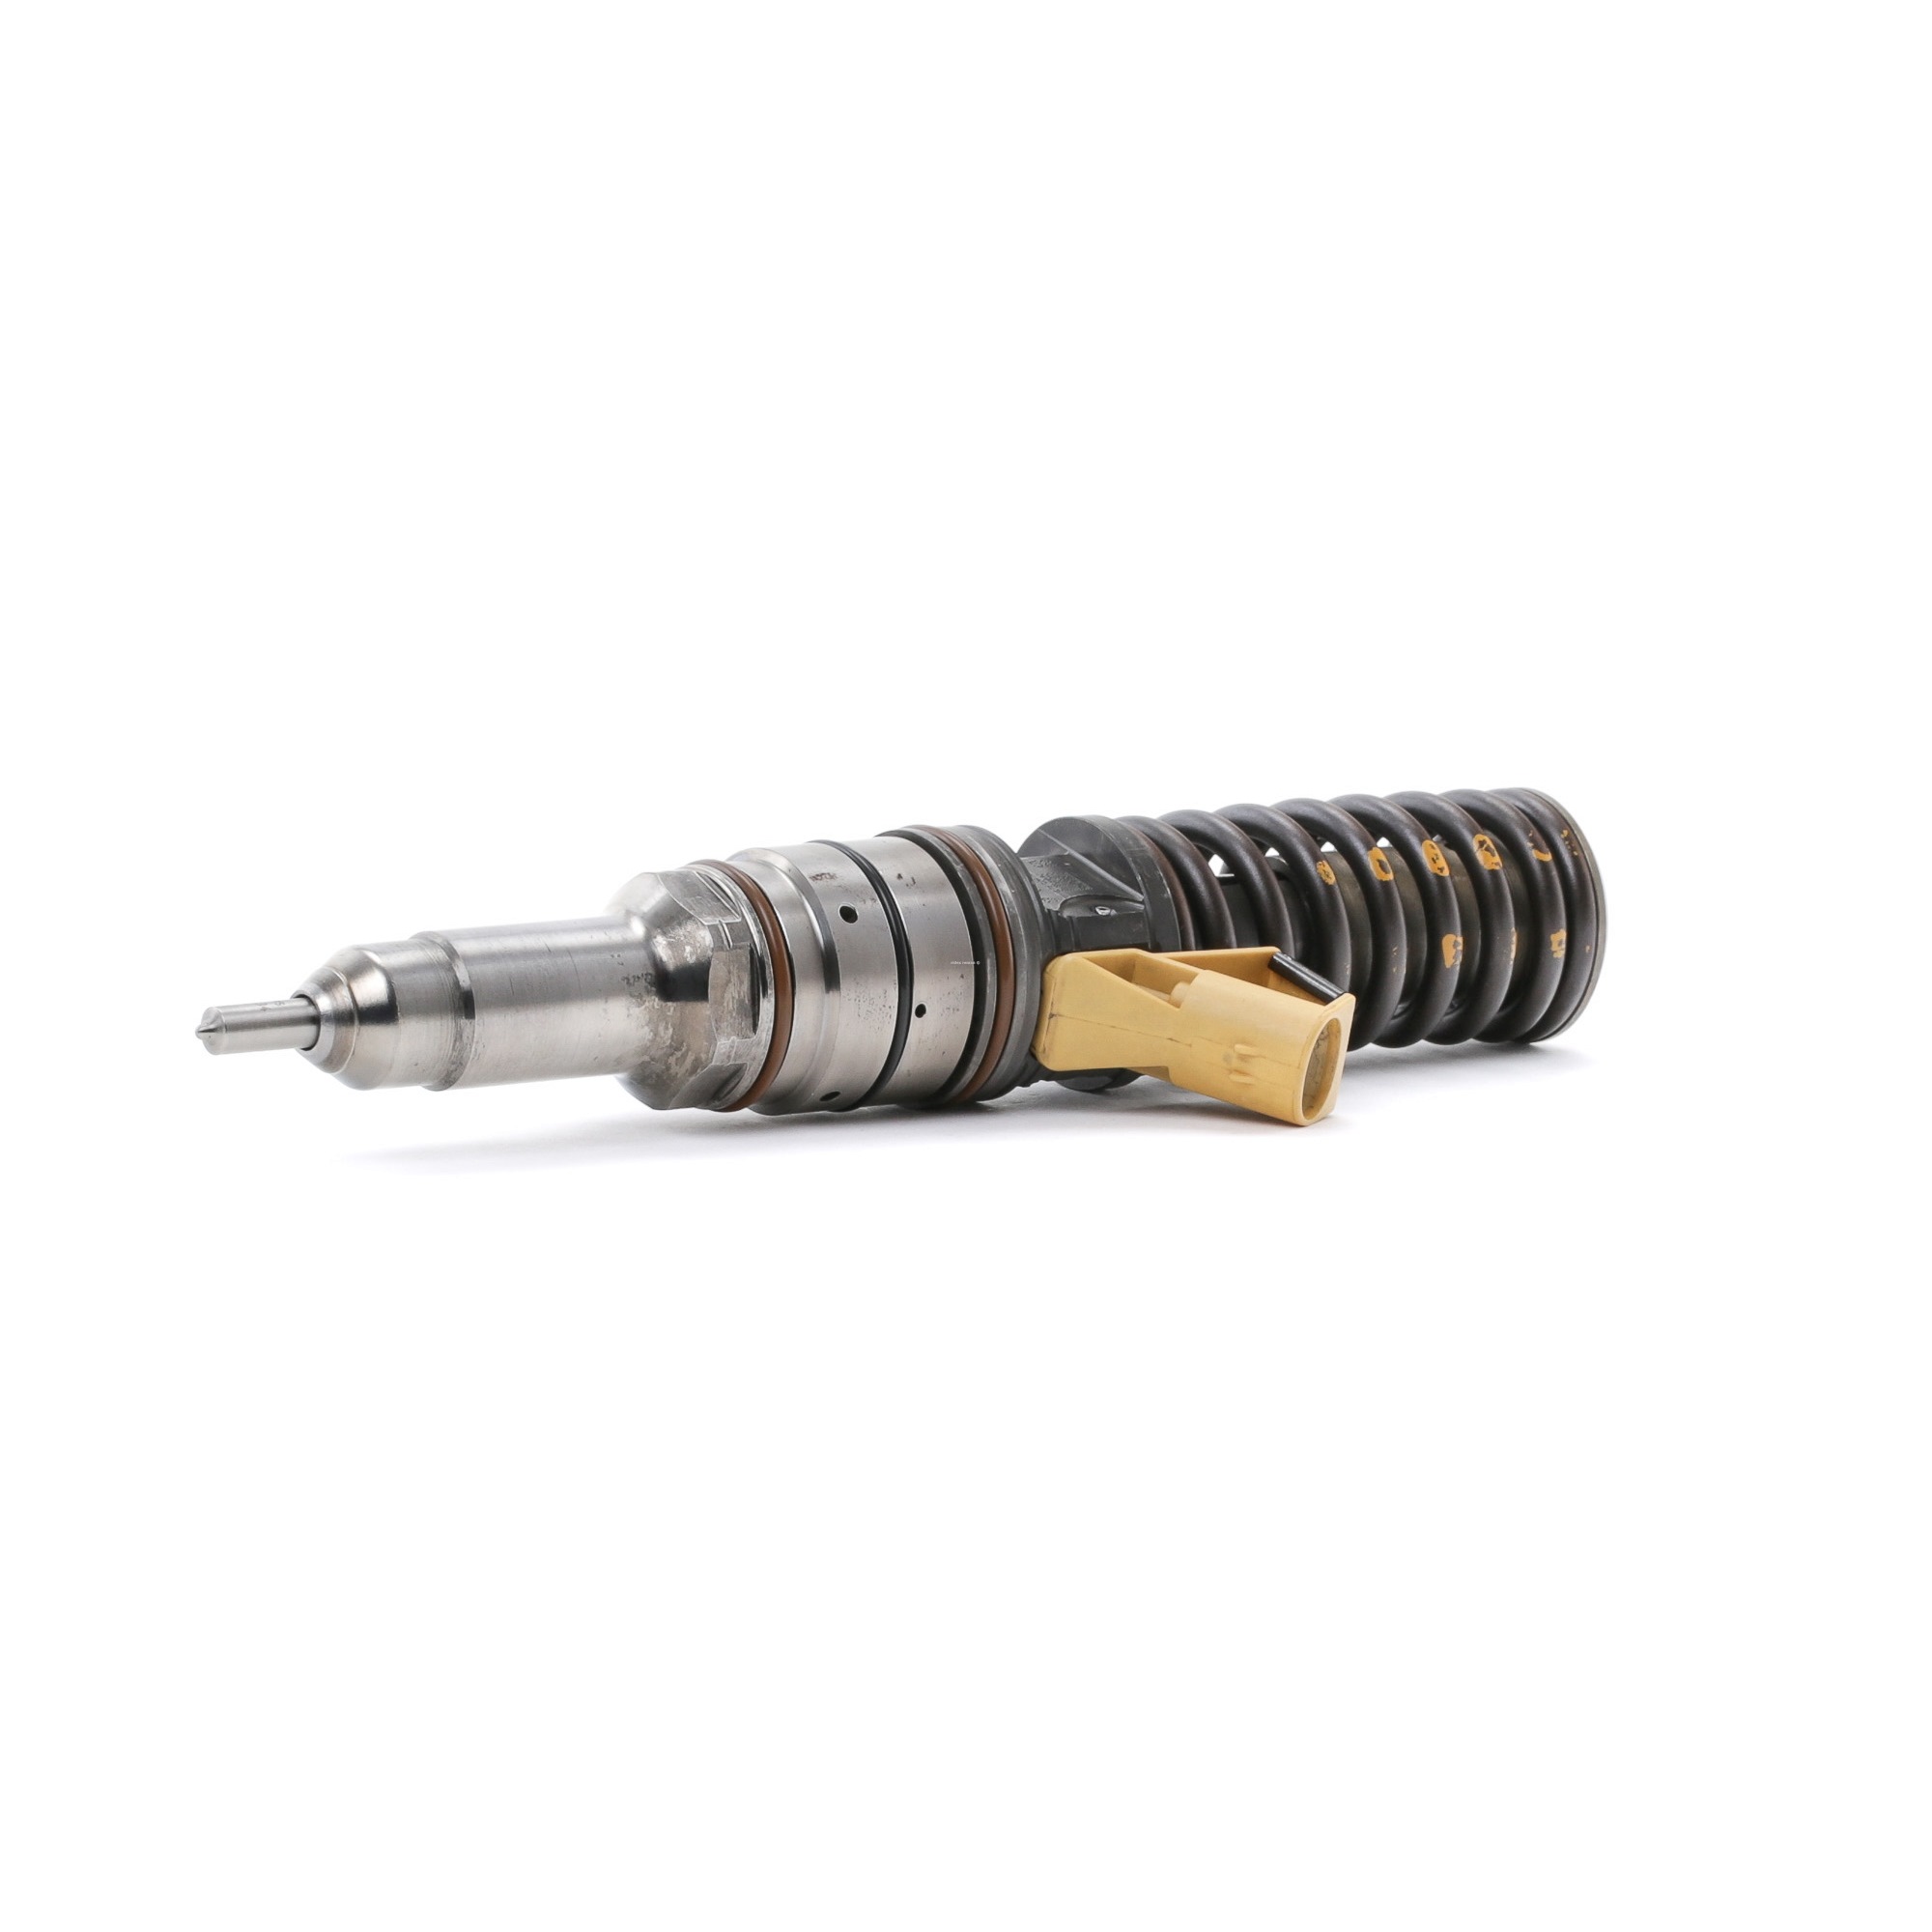 RIDEX REMAN Pump and Nozzle Unit 3930I0021R buy